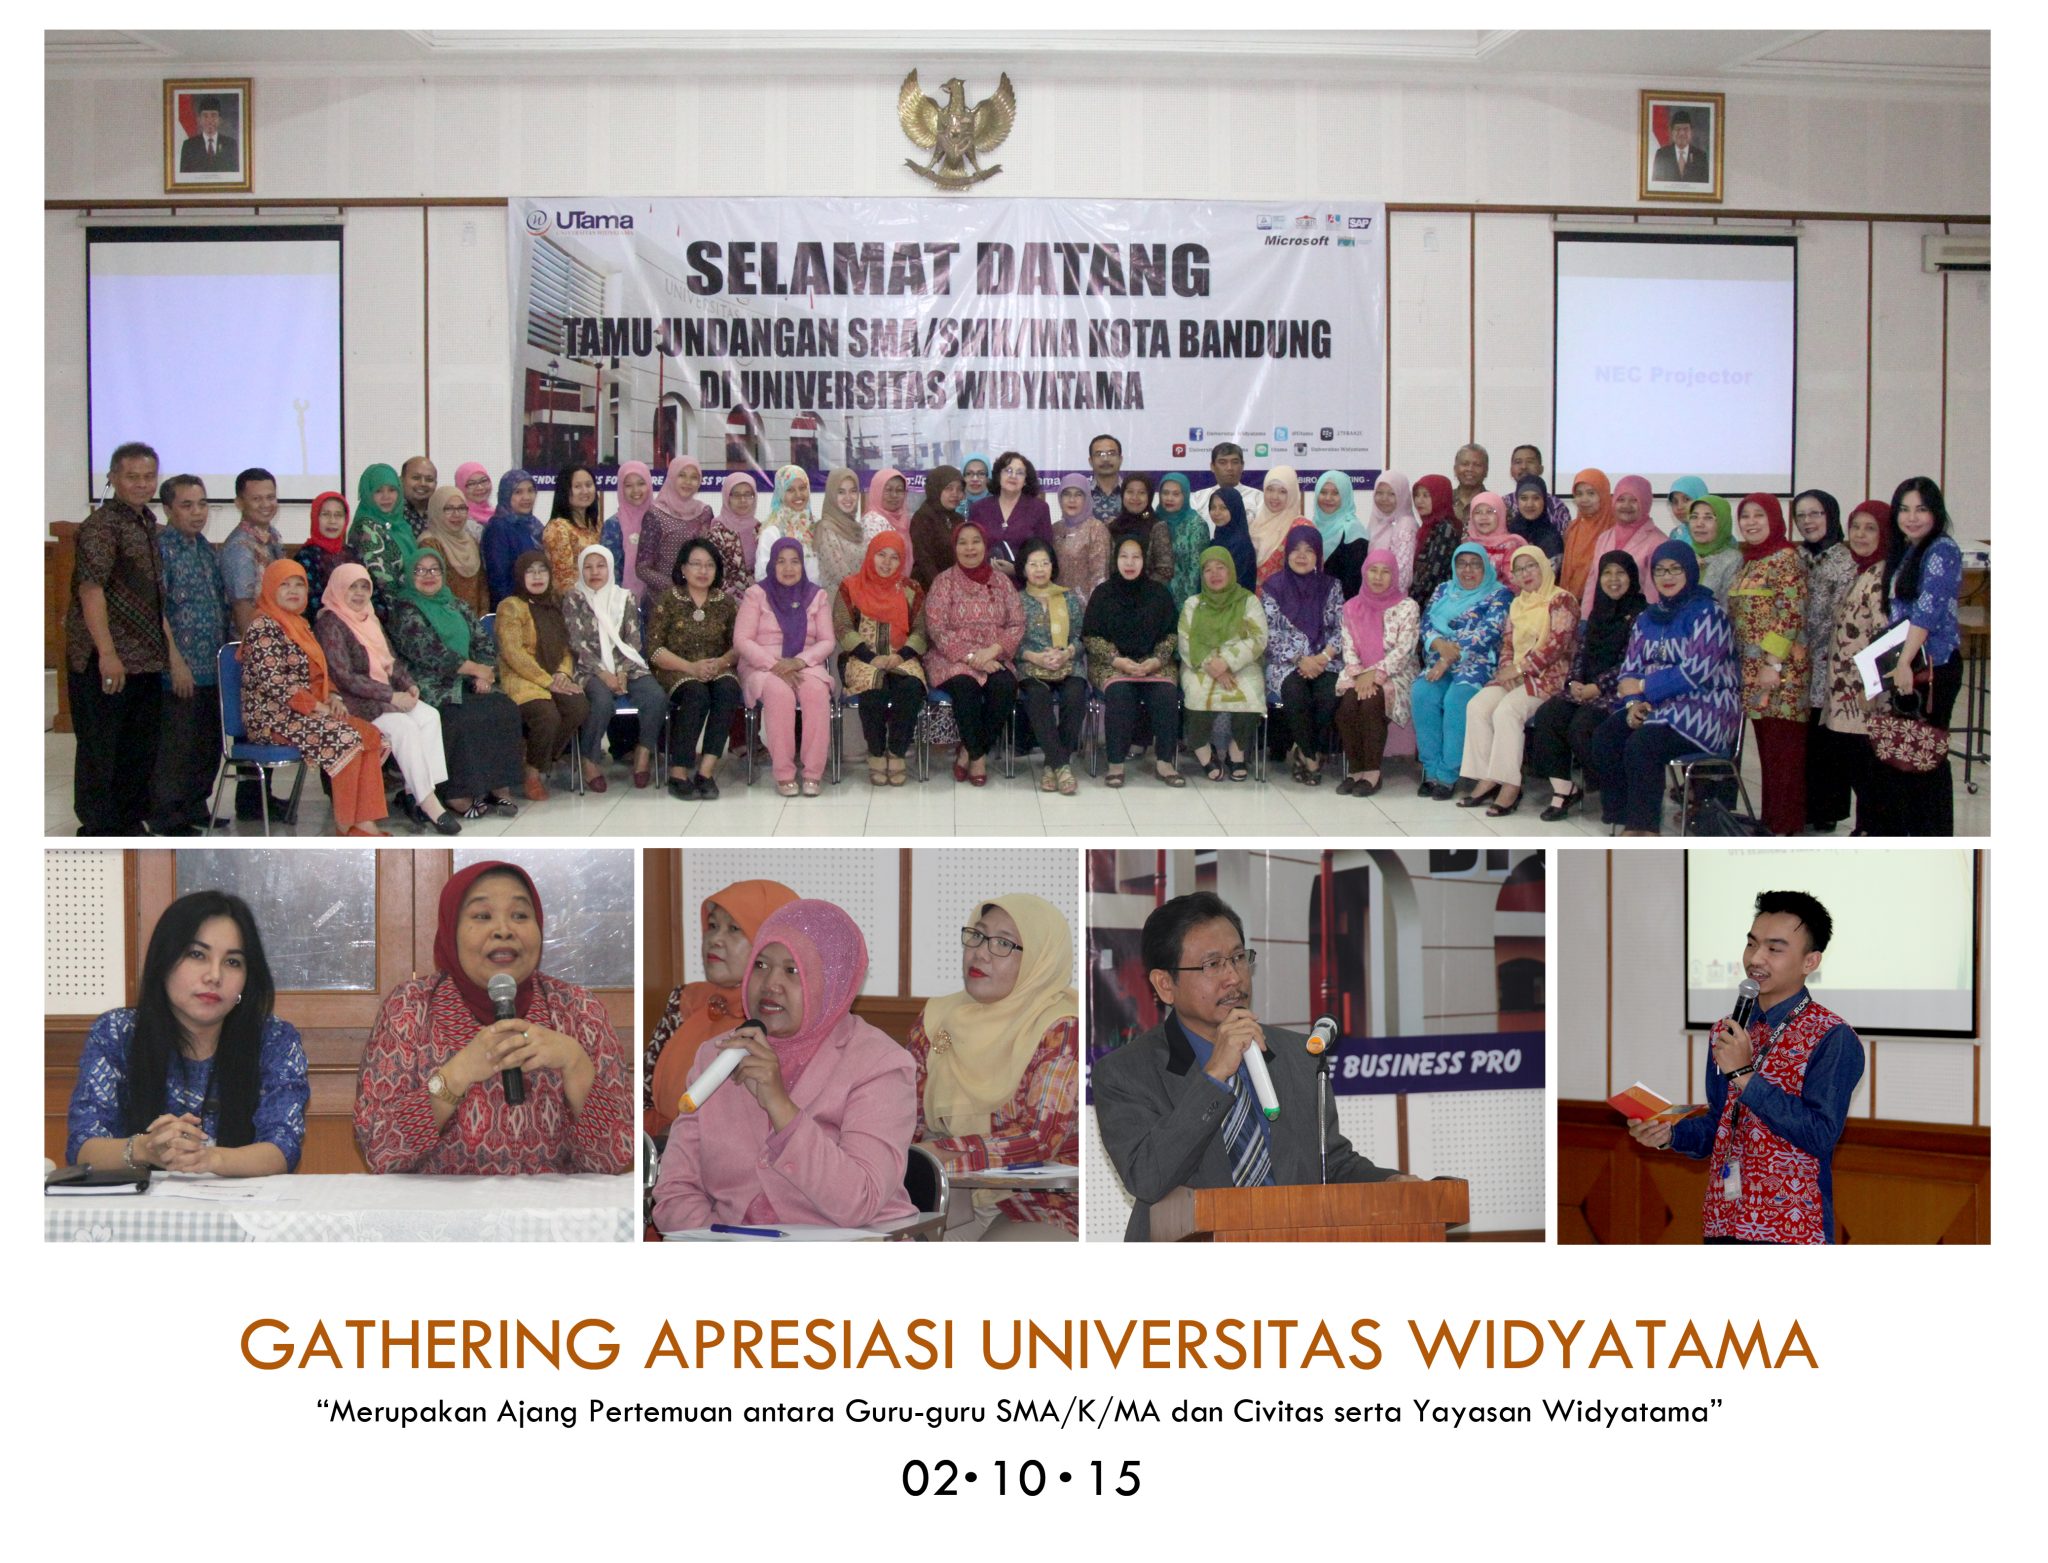 GATHERING APRESIASI REPORT - Universitas Widyatama Gelar Kembali Pertemuan Guru SMA/K/MA Se-Kota Bandung